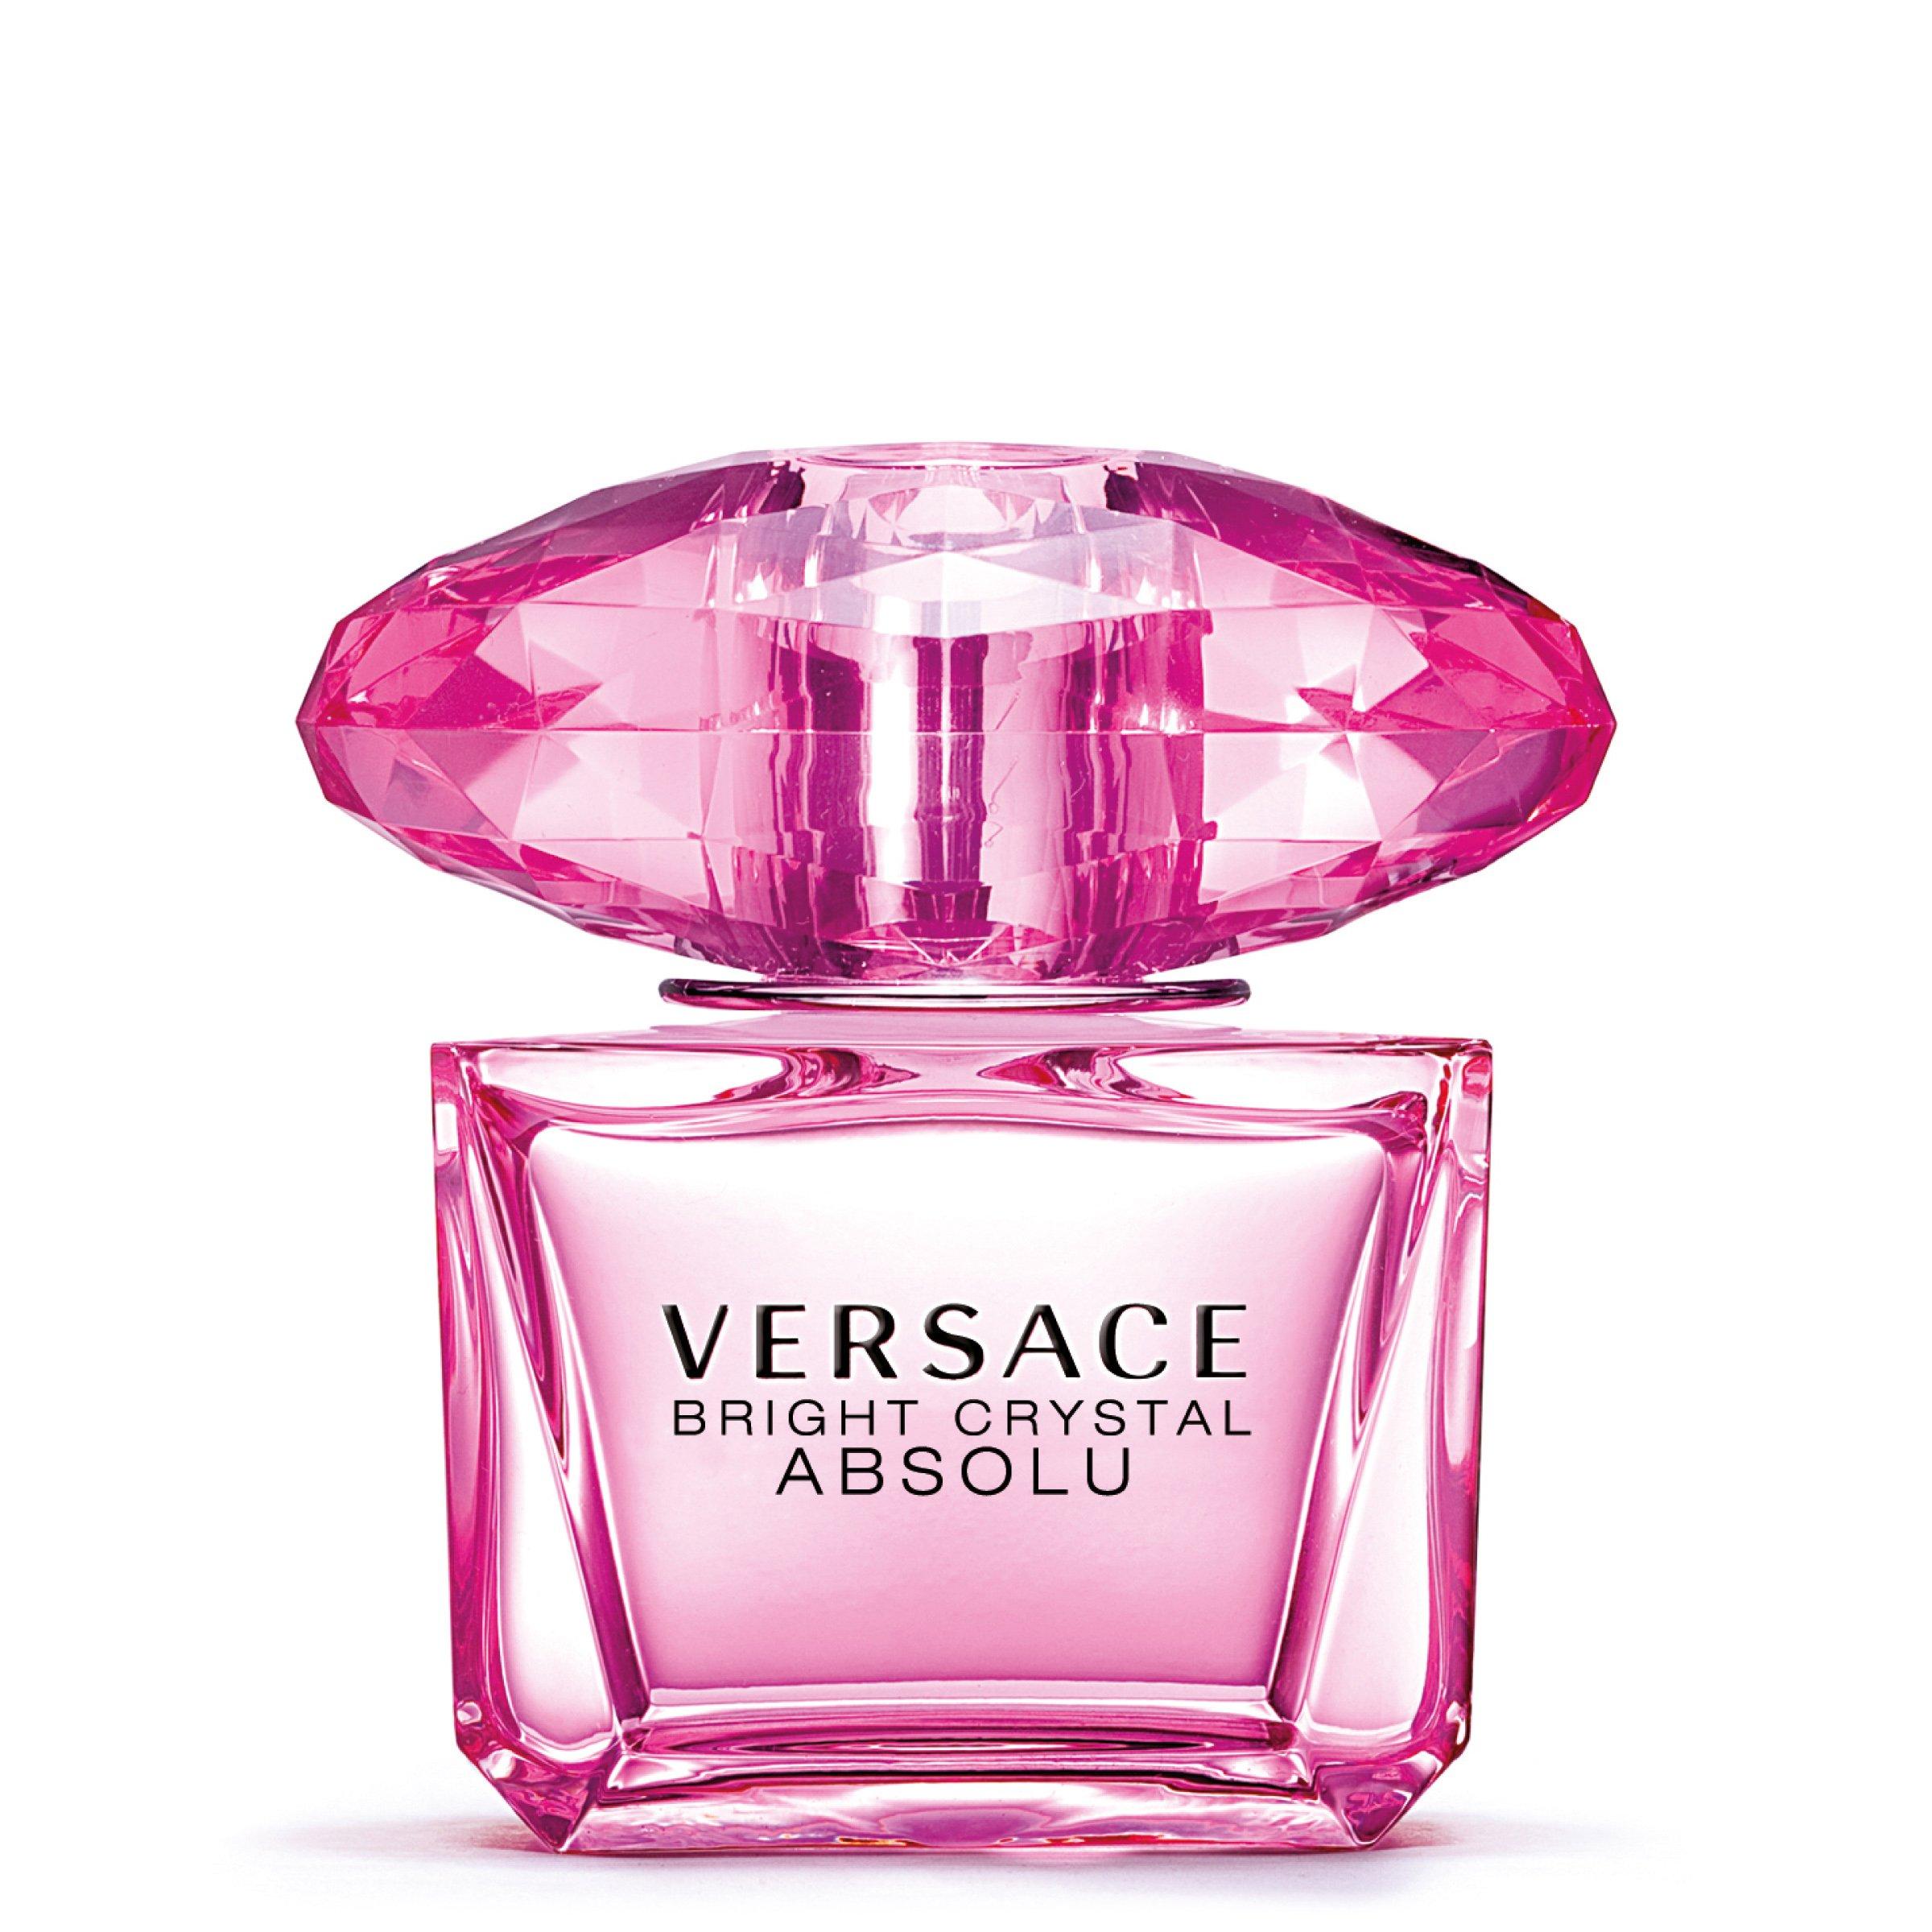 versace absolute crystal perfume